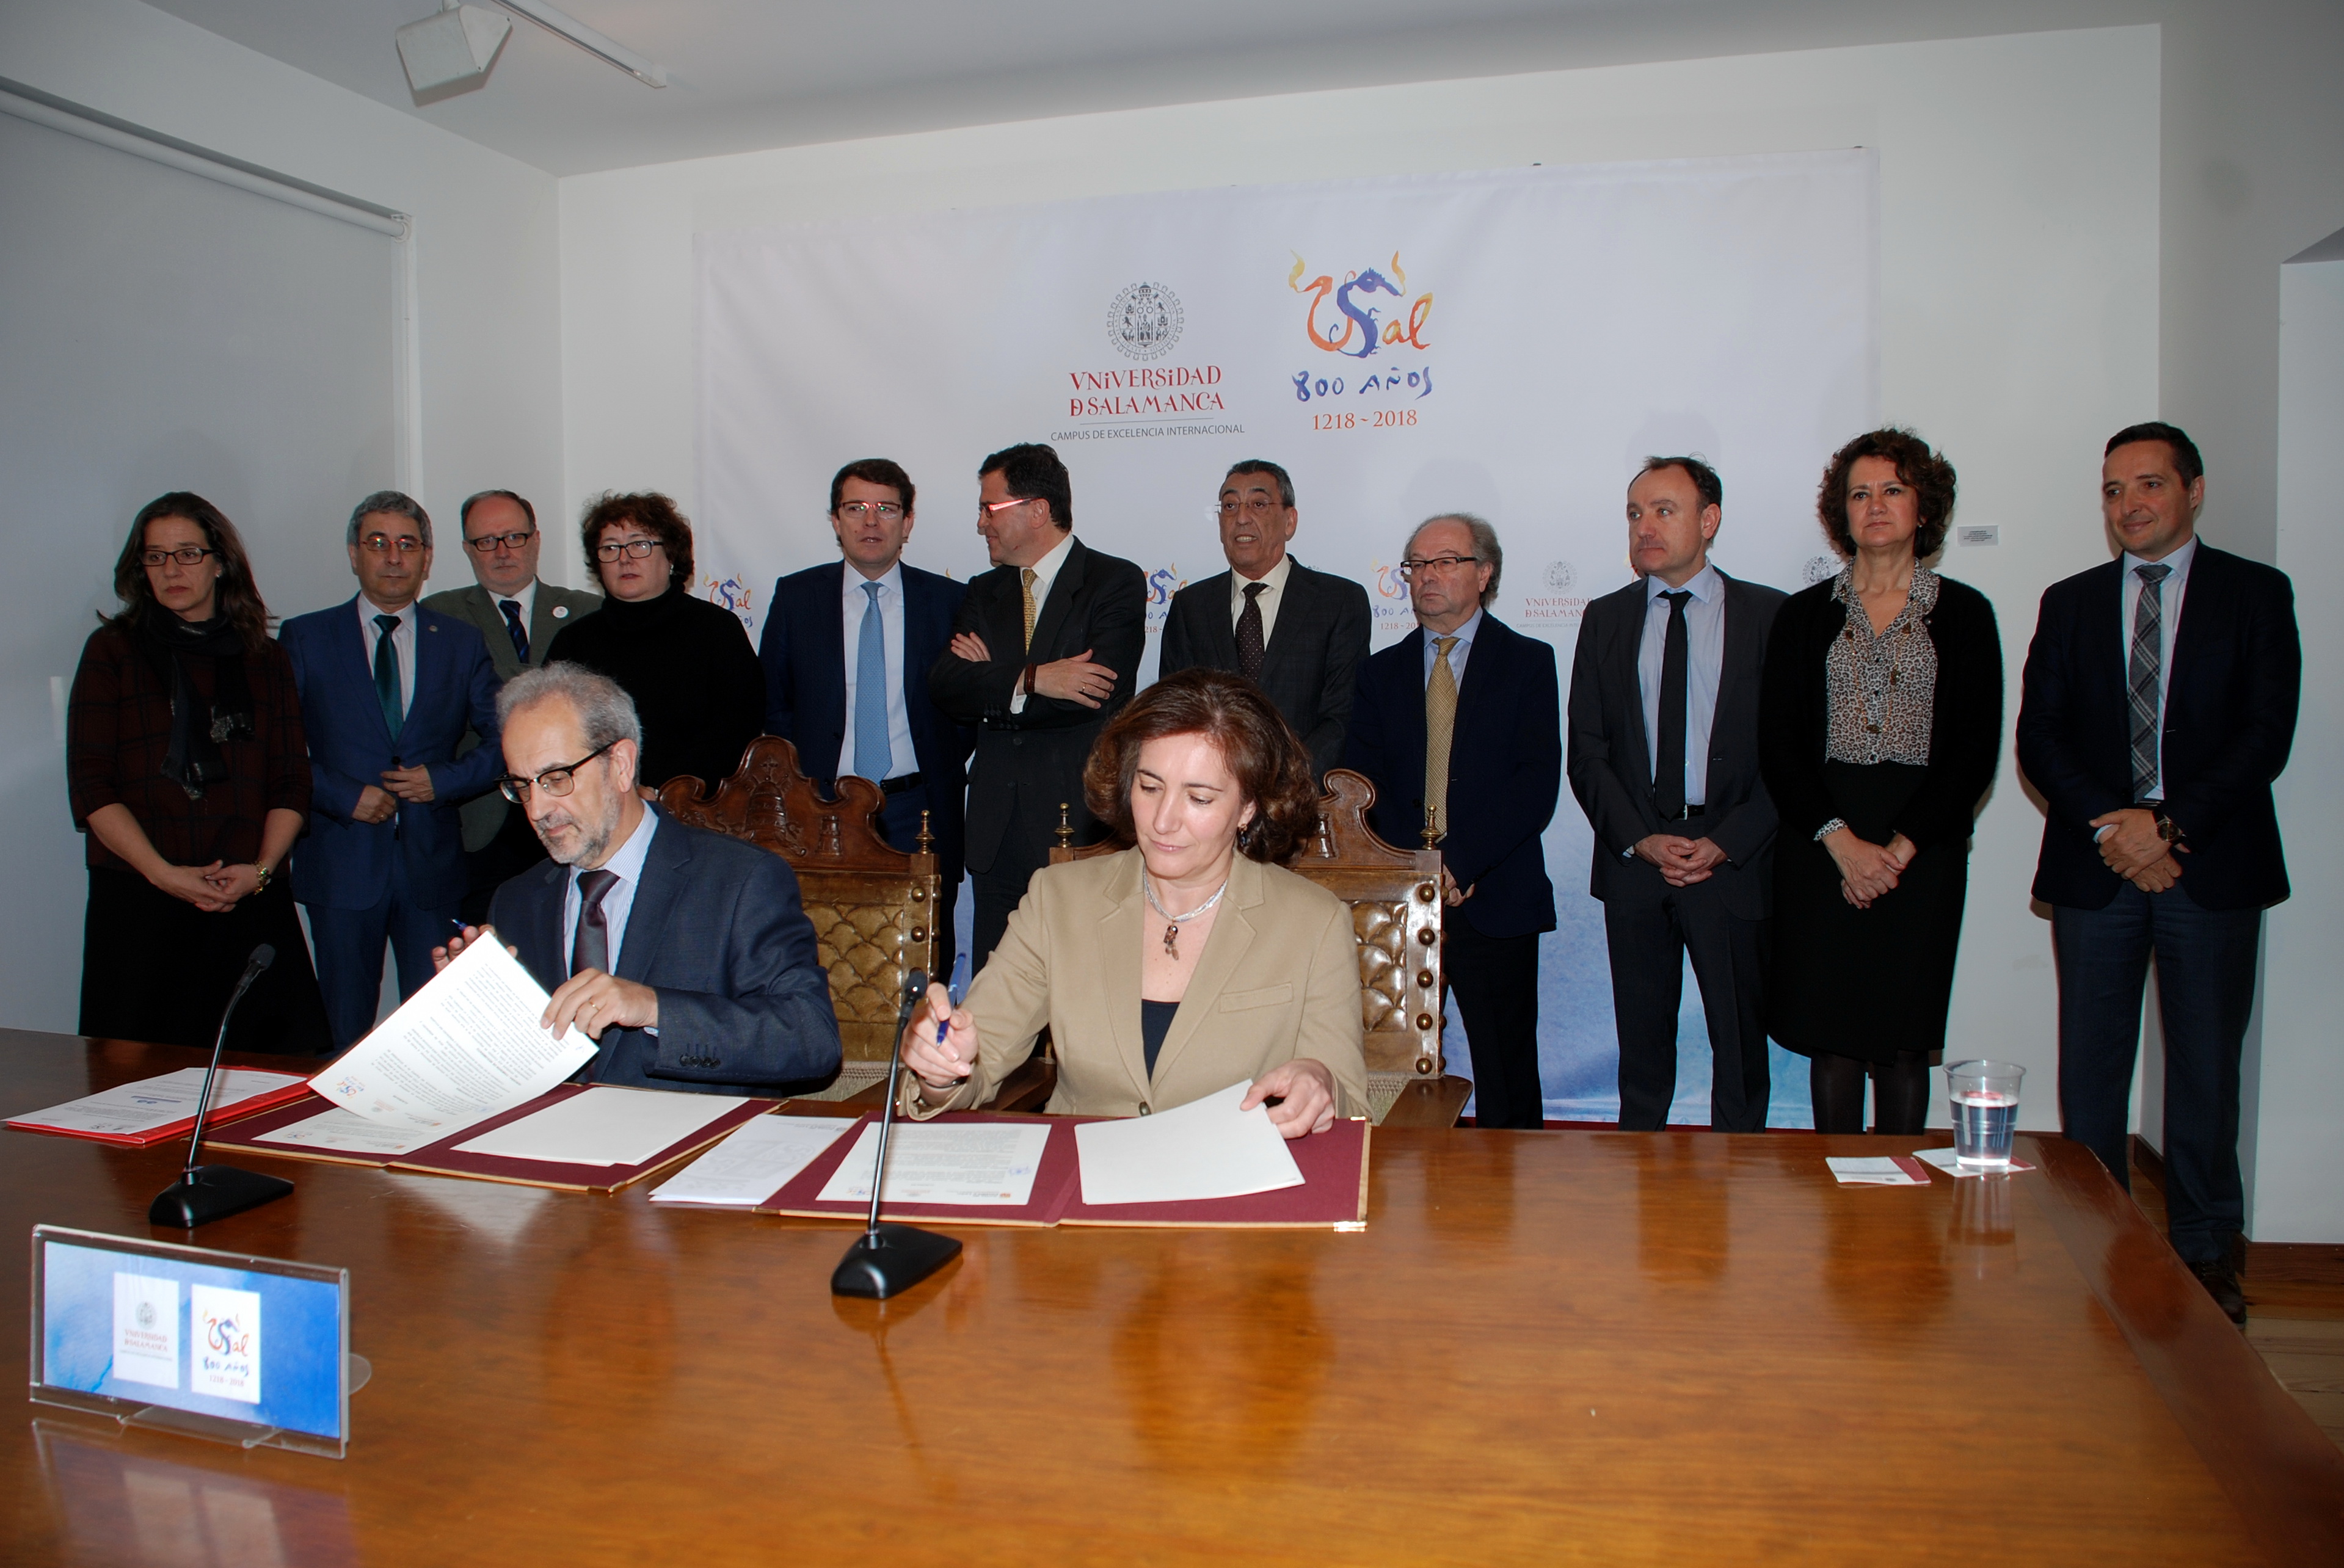 La Junta asume el compromiso de financiar las obras del futuro Centro Internacional de Referencia del Español de la Universidad de Salamanca